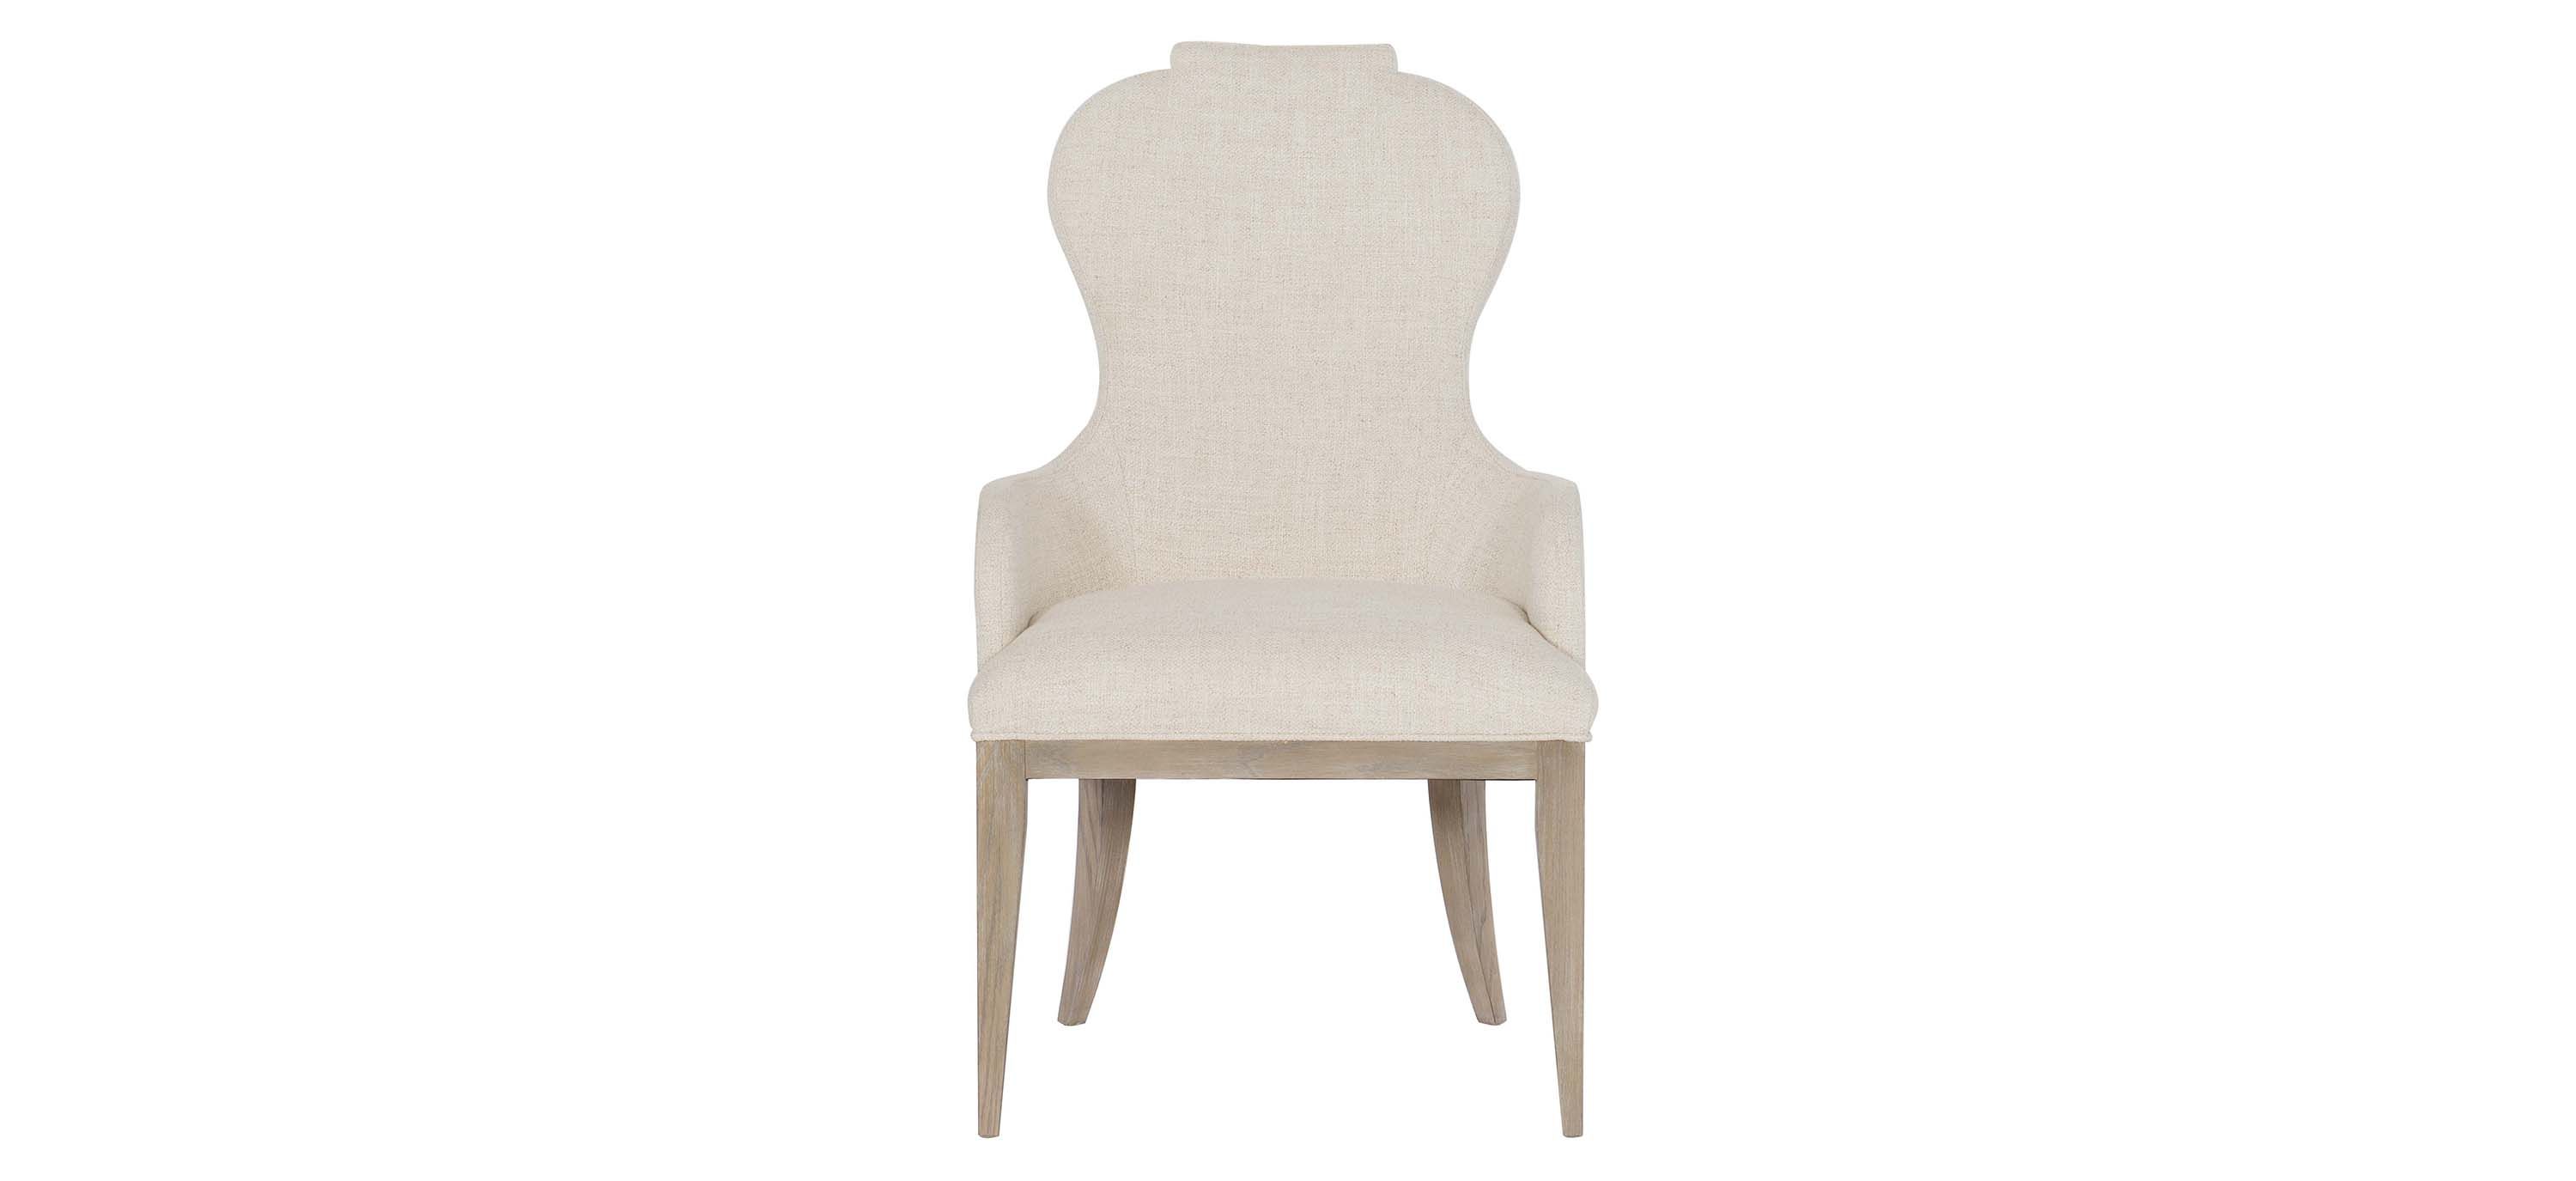 Santa Barbara Upholstered Arm Chair